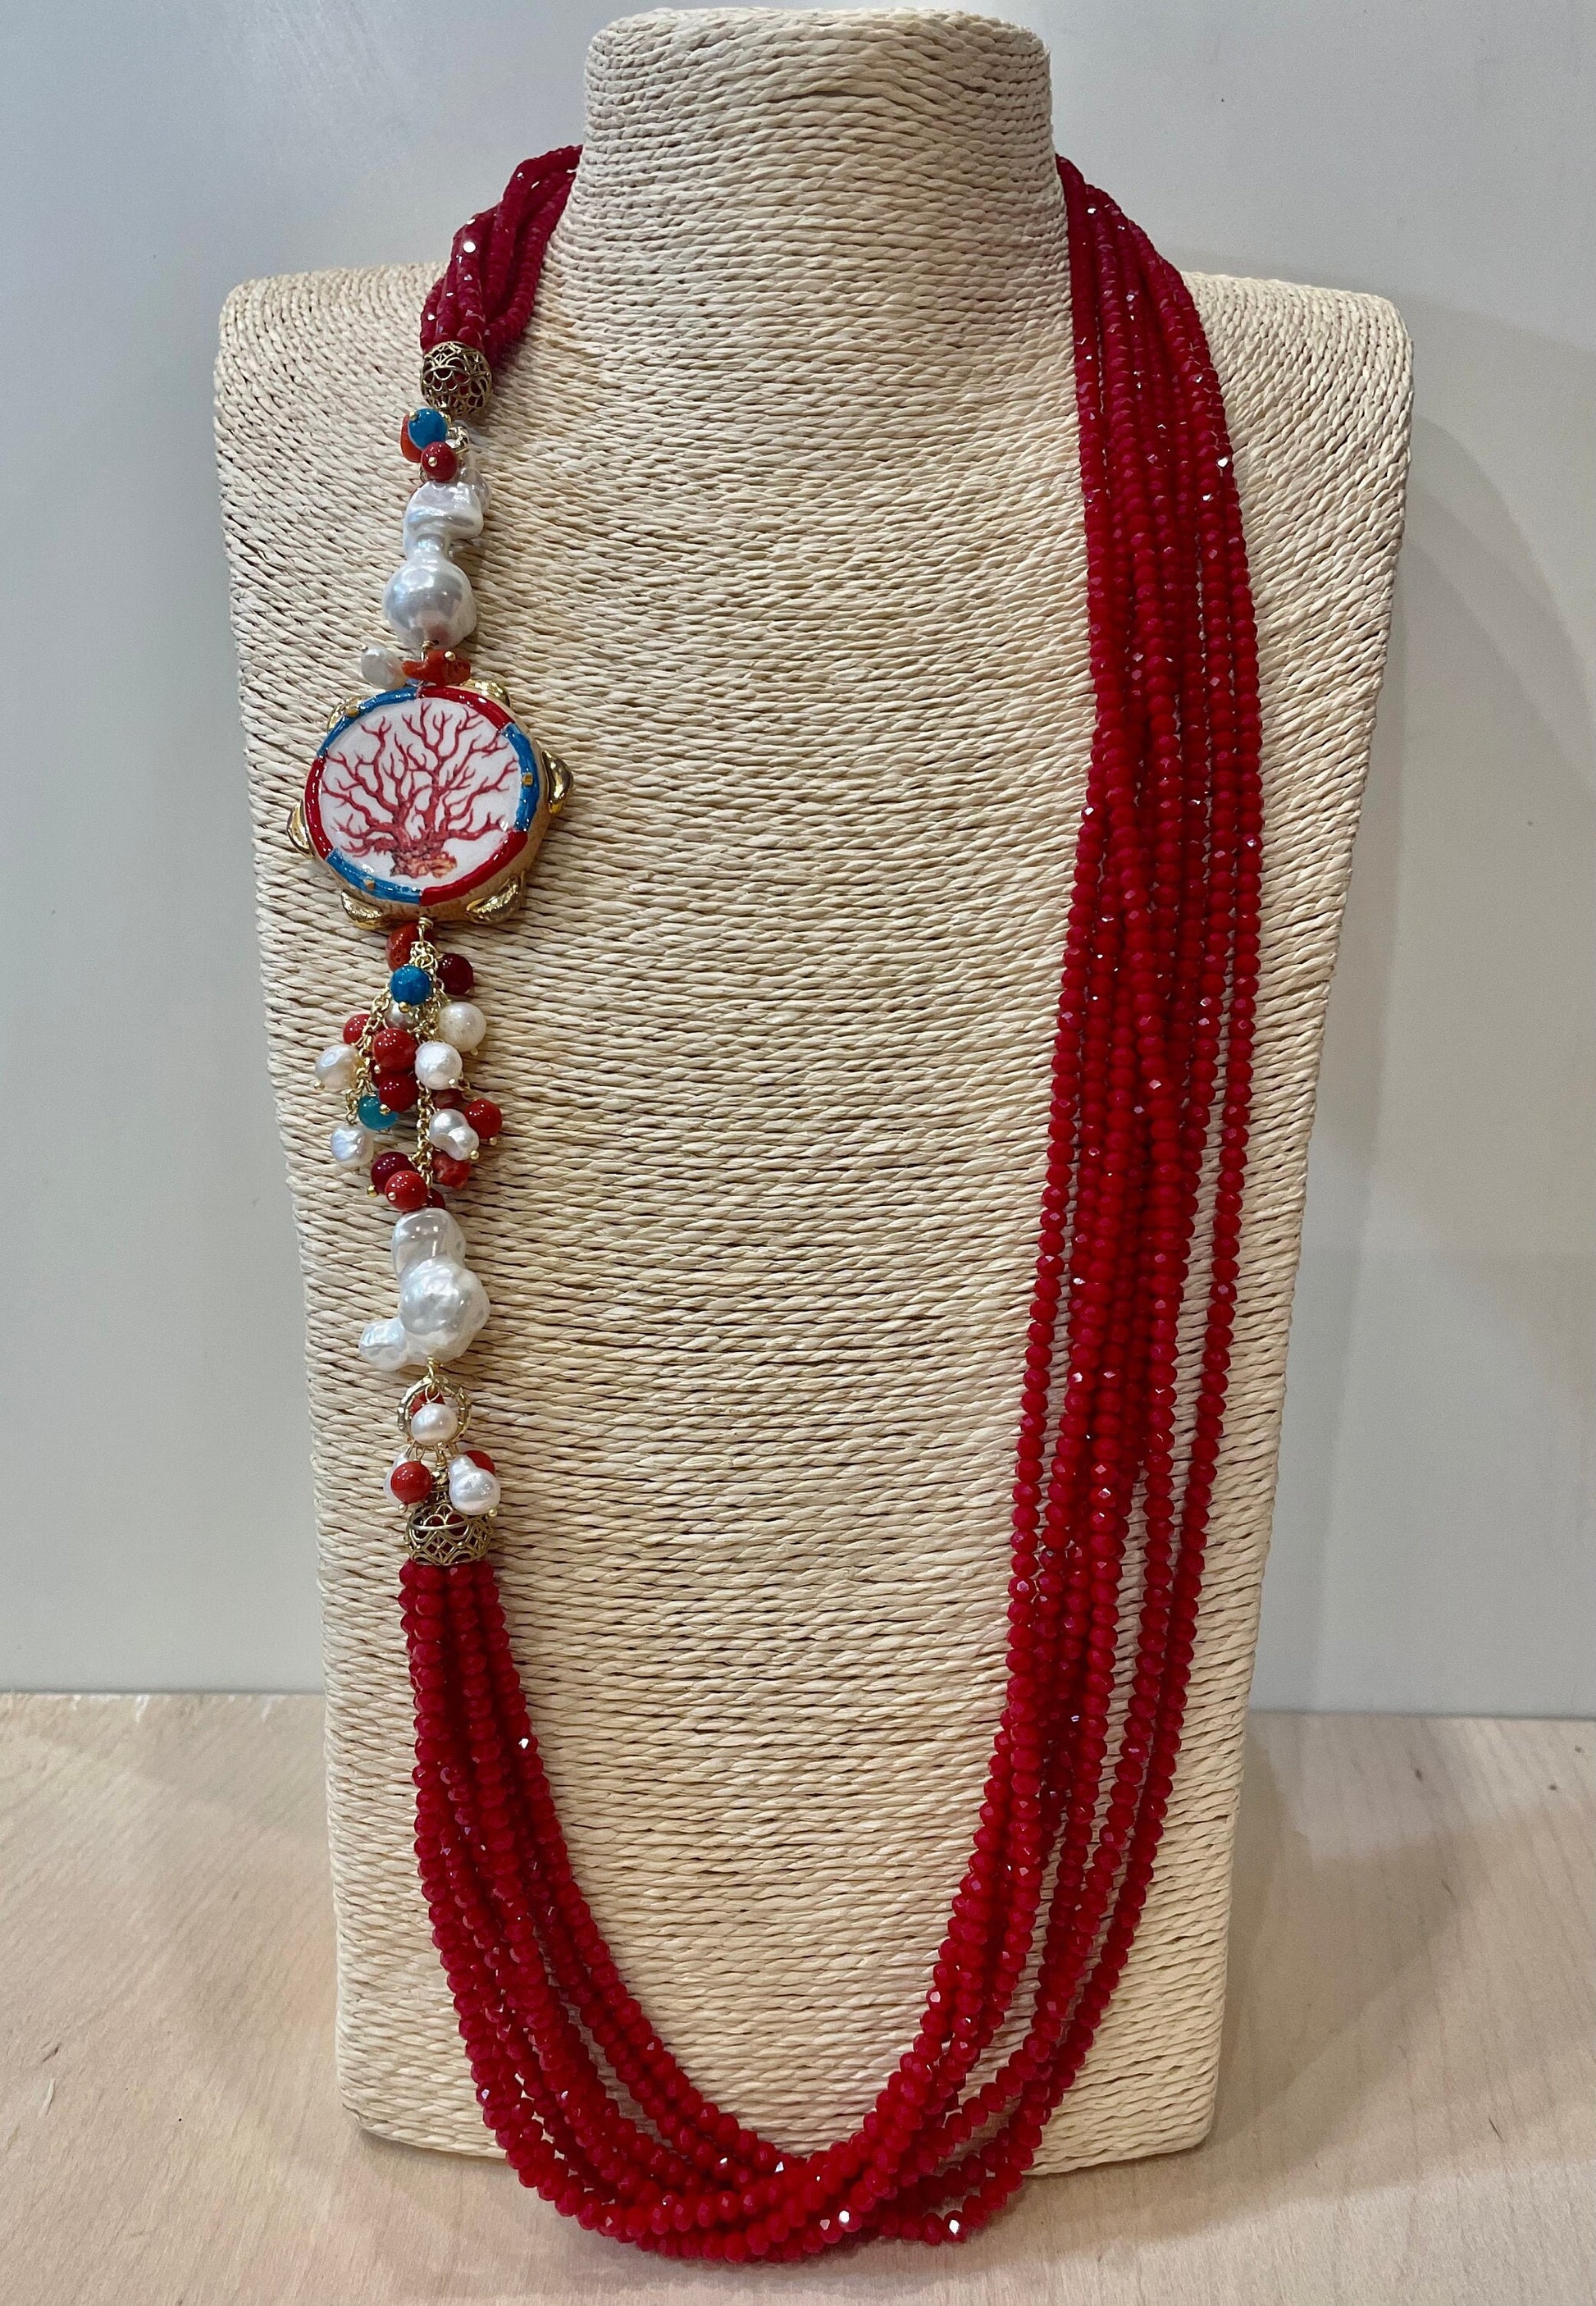 Collana multifilo con cristalli, collana lunga con tamburello di ceramica di Caltagirone, perle scaramazze e pietre dure.ç